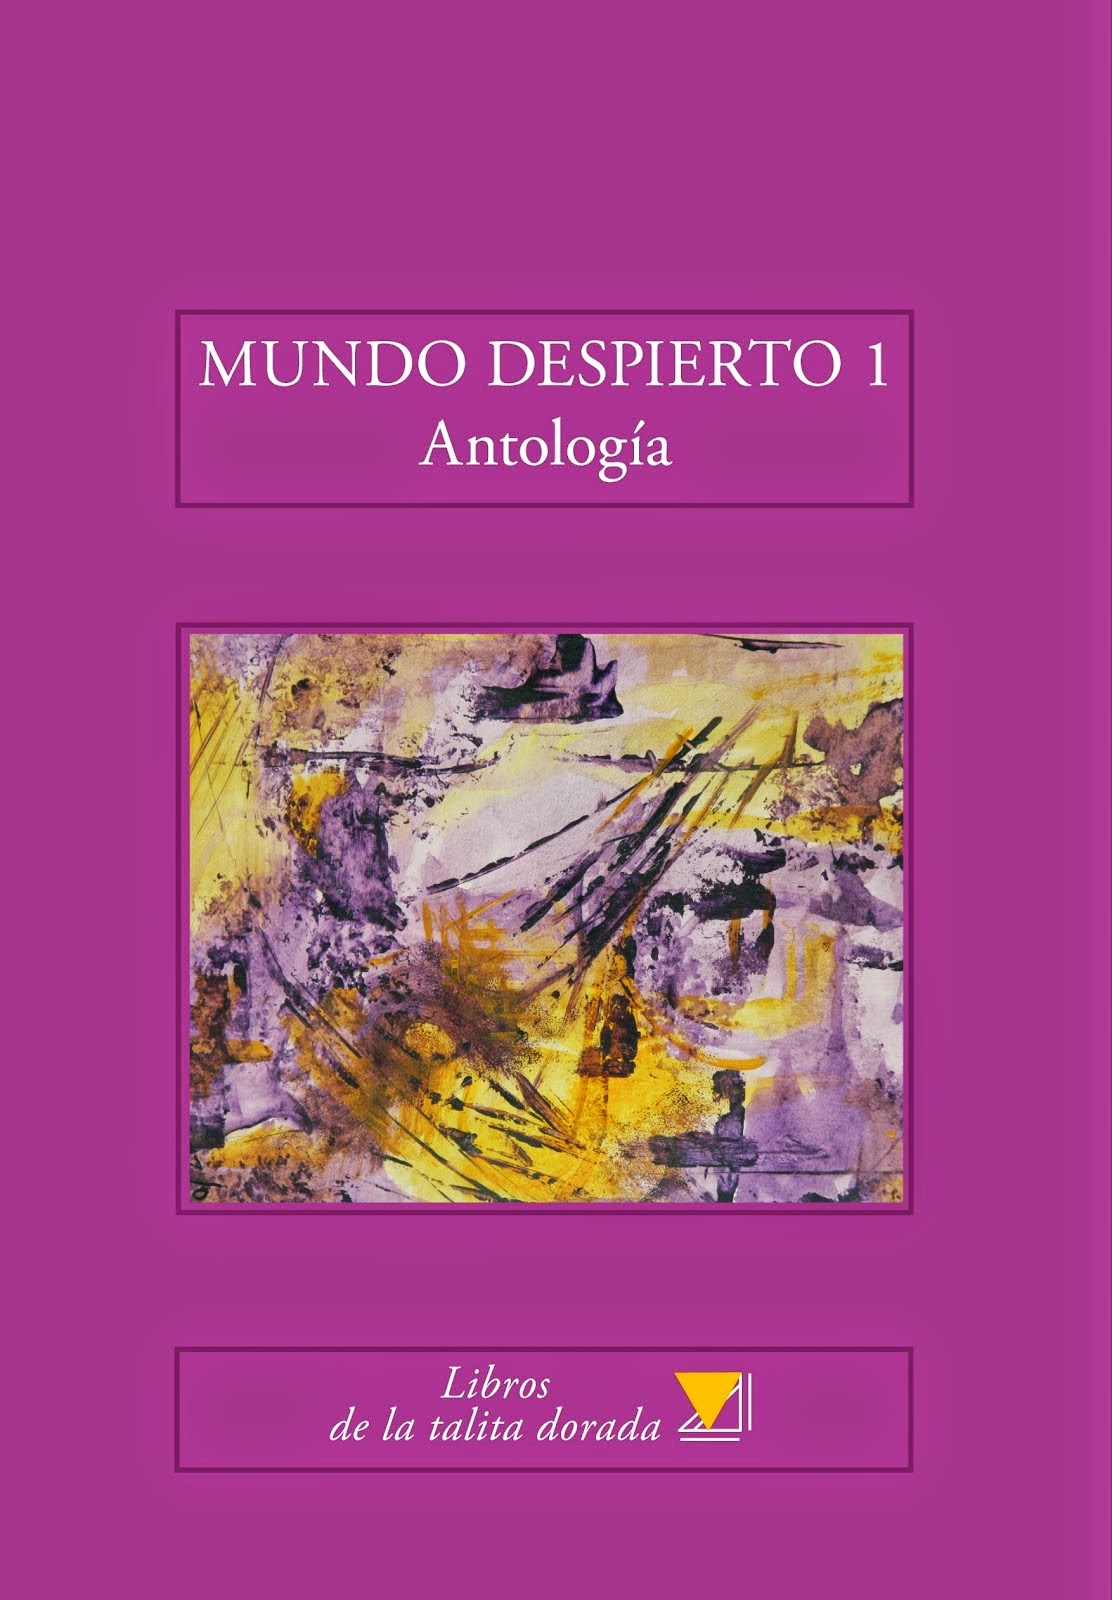 MUNDO DESPIERTO 1, Antología de taller, 2014